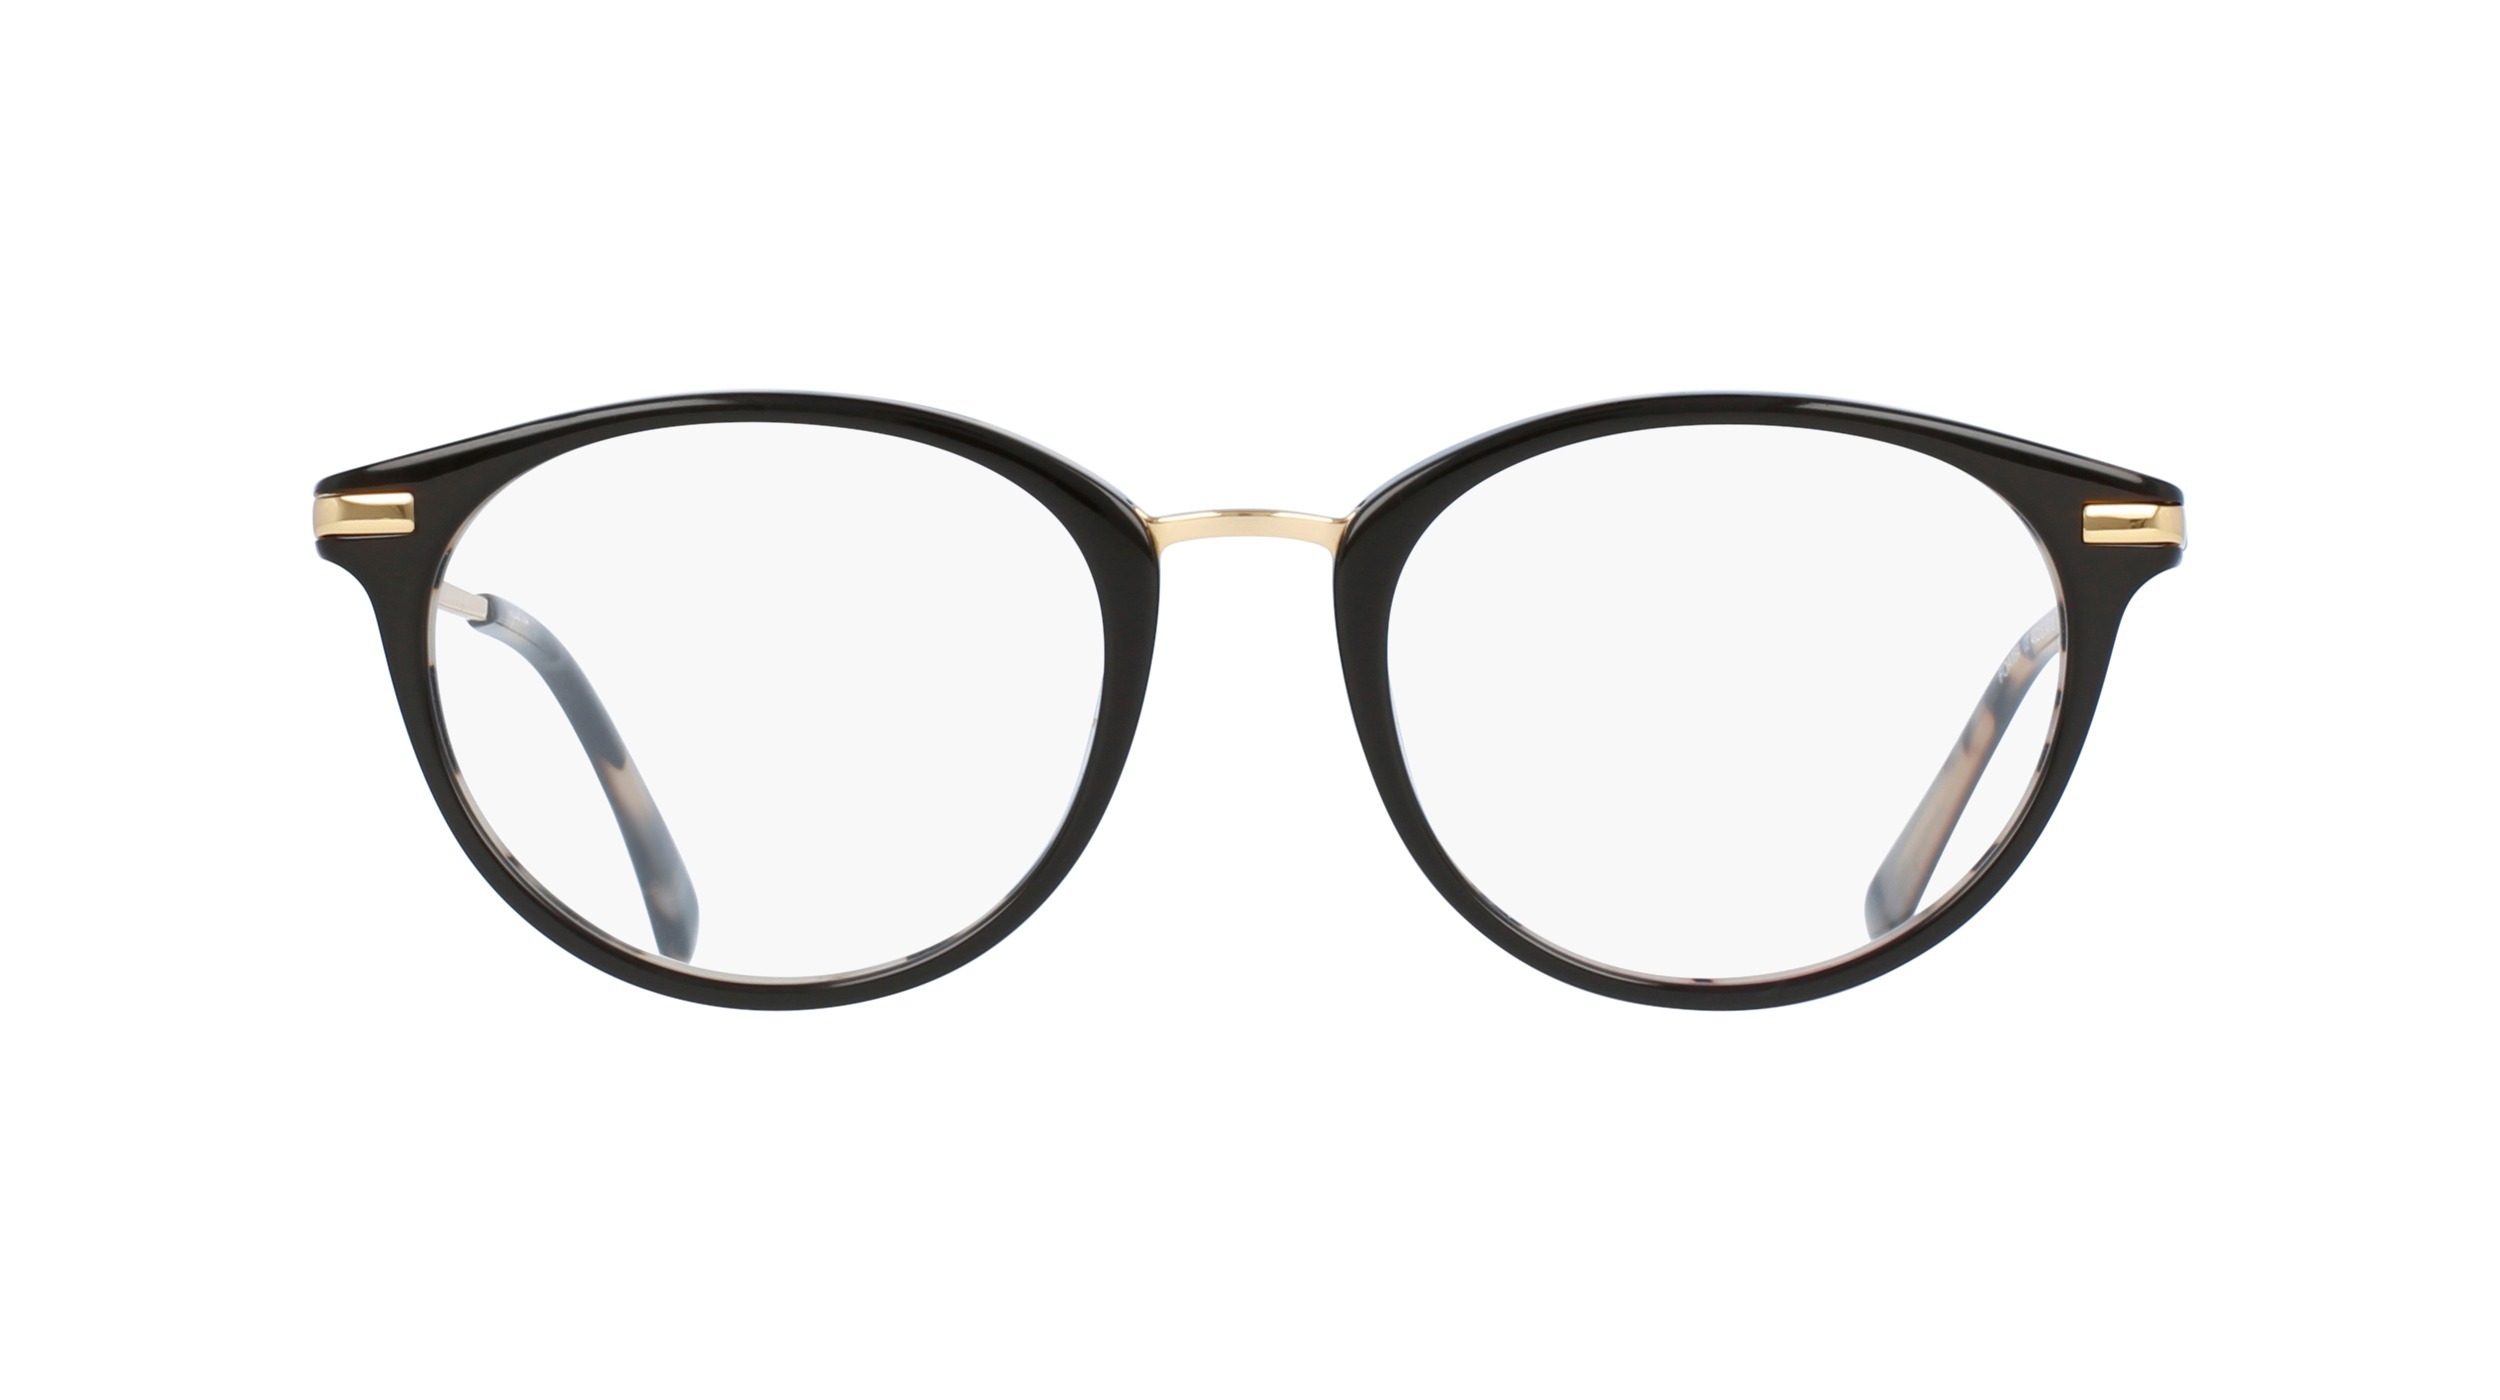 optic2000-lunettes-ripcurl